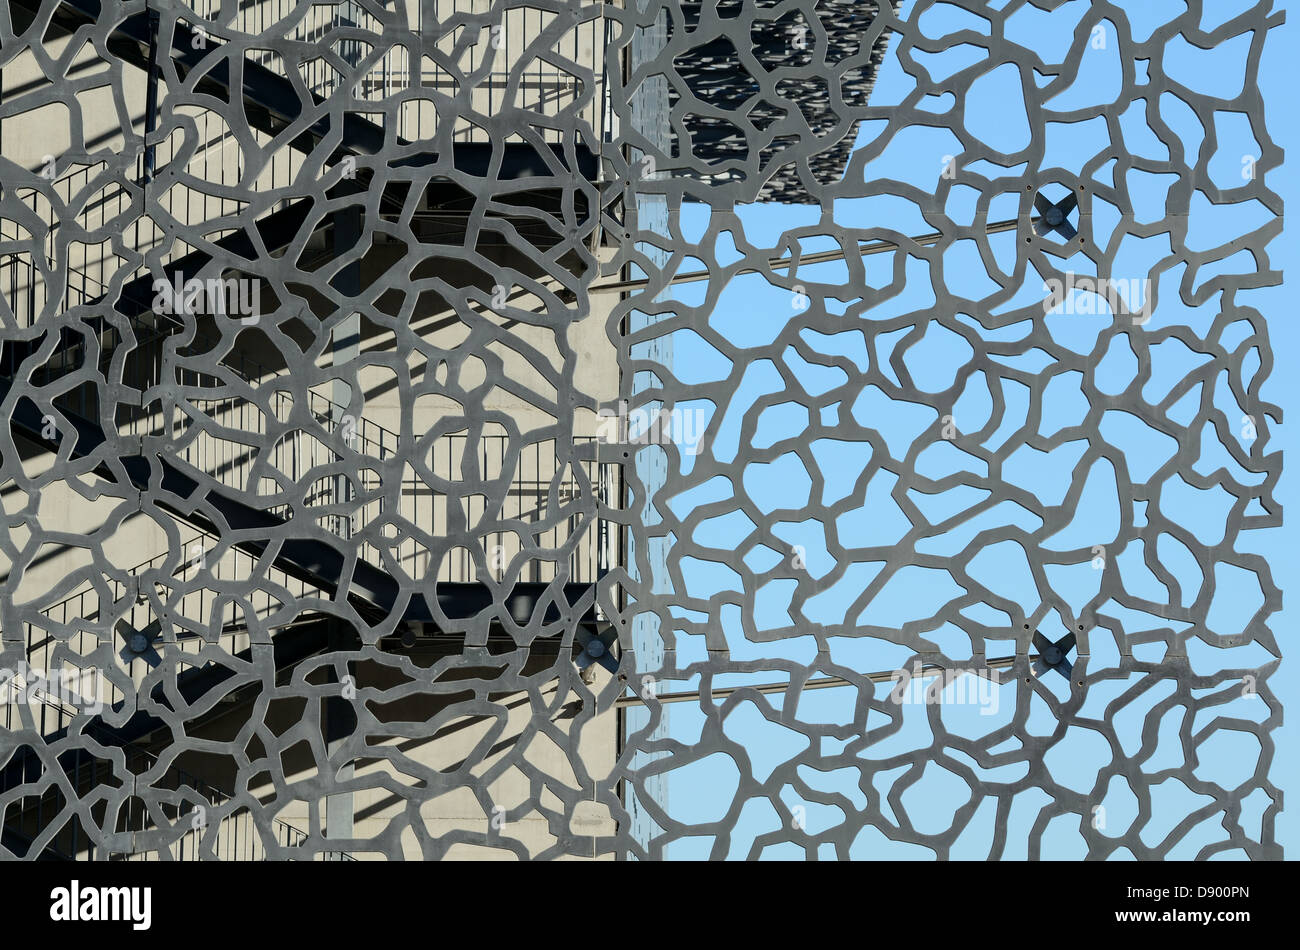 Muster aus Beton-Lattice-Sonnenschirm, Latticework-Bildschirm oder Brise-Soleil & Treppe MUCEM Museum von Rudy Ricciotti Marseille Provence Frankreich Stockfoto